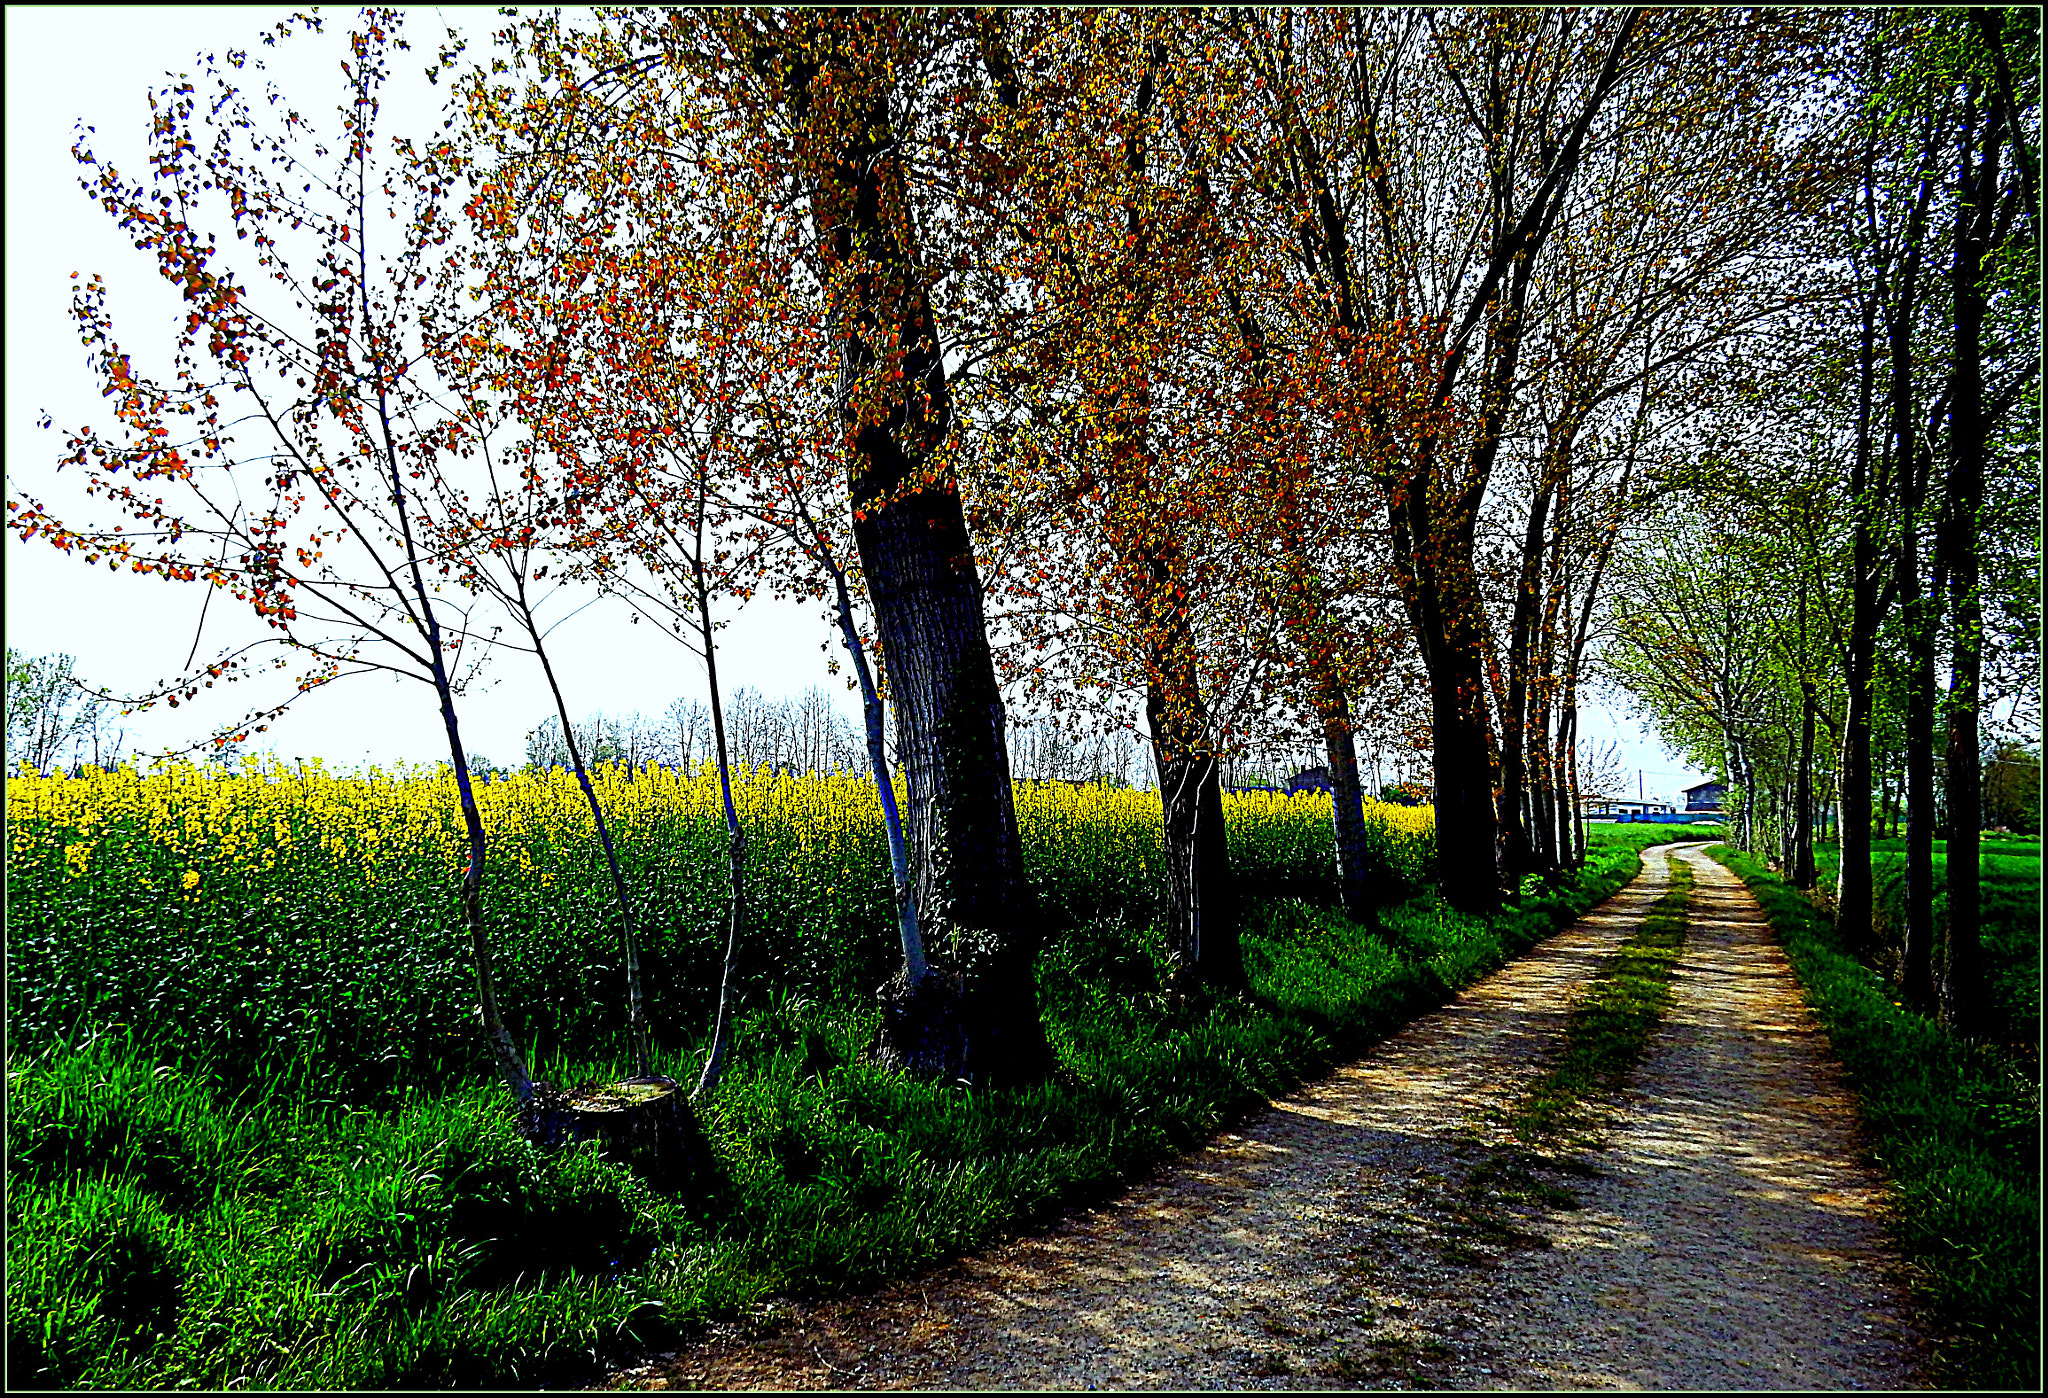 Nikon Coolpix S9700 sample photo. Fiori e colori della bella primavera, in campagna. photography